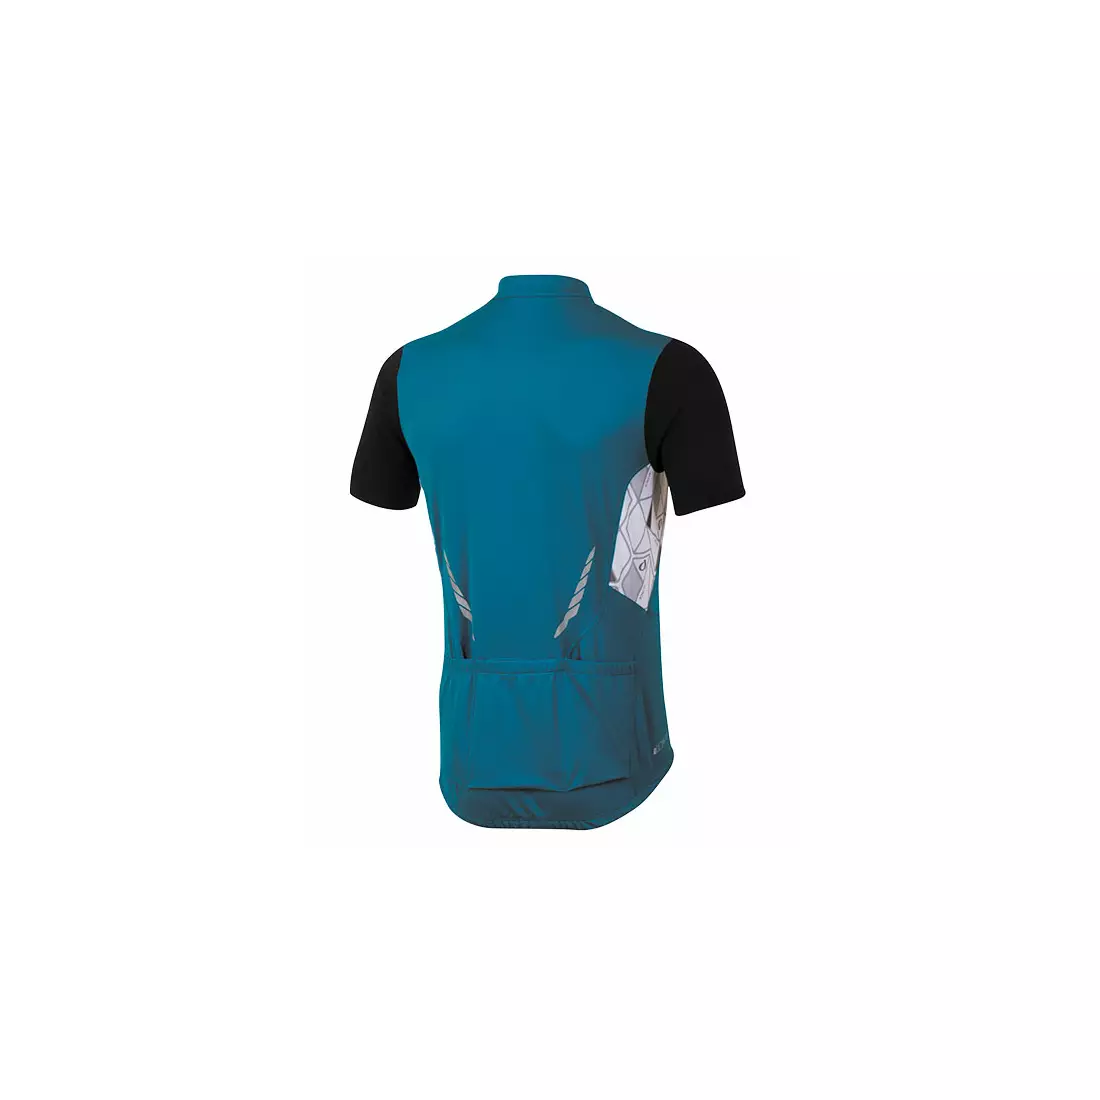 Pánský cyklistický dres PEARL IZUMI ATTACK, modrý 11121405-4DI